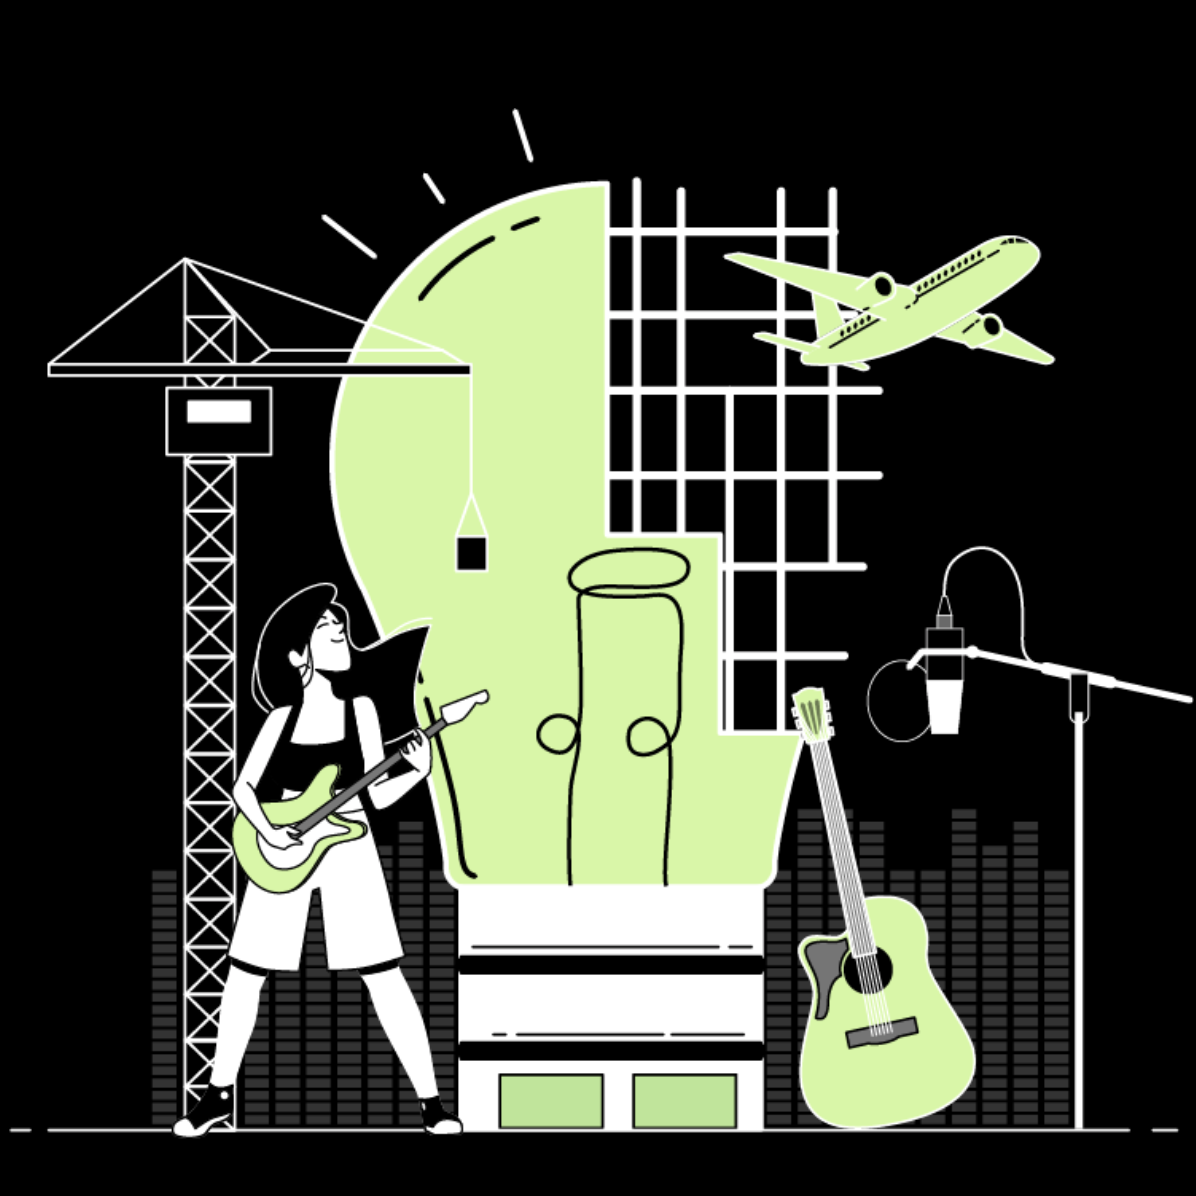 Die Grafik in hellgrün, weiß und schwarz, zeigt (von links nach rechts) einen Kran, eine Person, die Gitarre spielt, eine überdimensionale Glühbirne, die oben rechts aus einem Gitter besteht, eine Gitarre, ein Flugzeug und ein Mikrofon an einem Ständer.